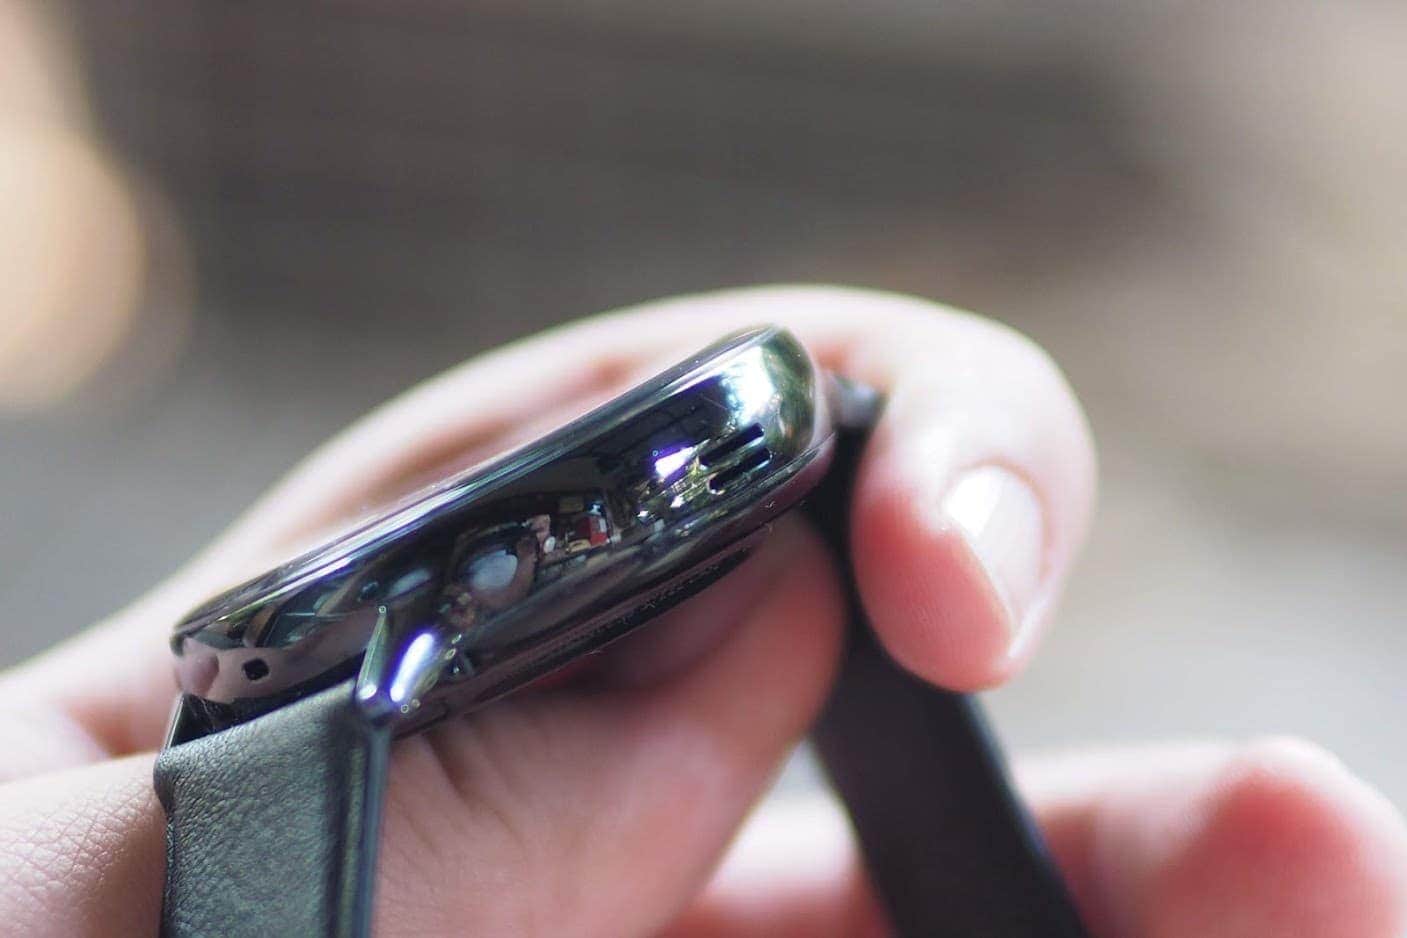 รีวิว Samsung Galaxy Watch Active 2 | ครบทุกอย่างในตัวเดียว ลงแอปได้ โทรได้ ไม่ต้องพึ่งสมาร์ทโฟน 39